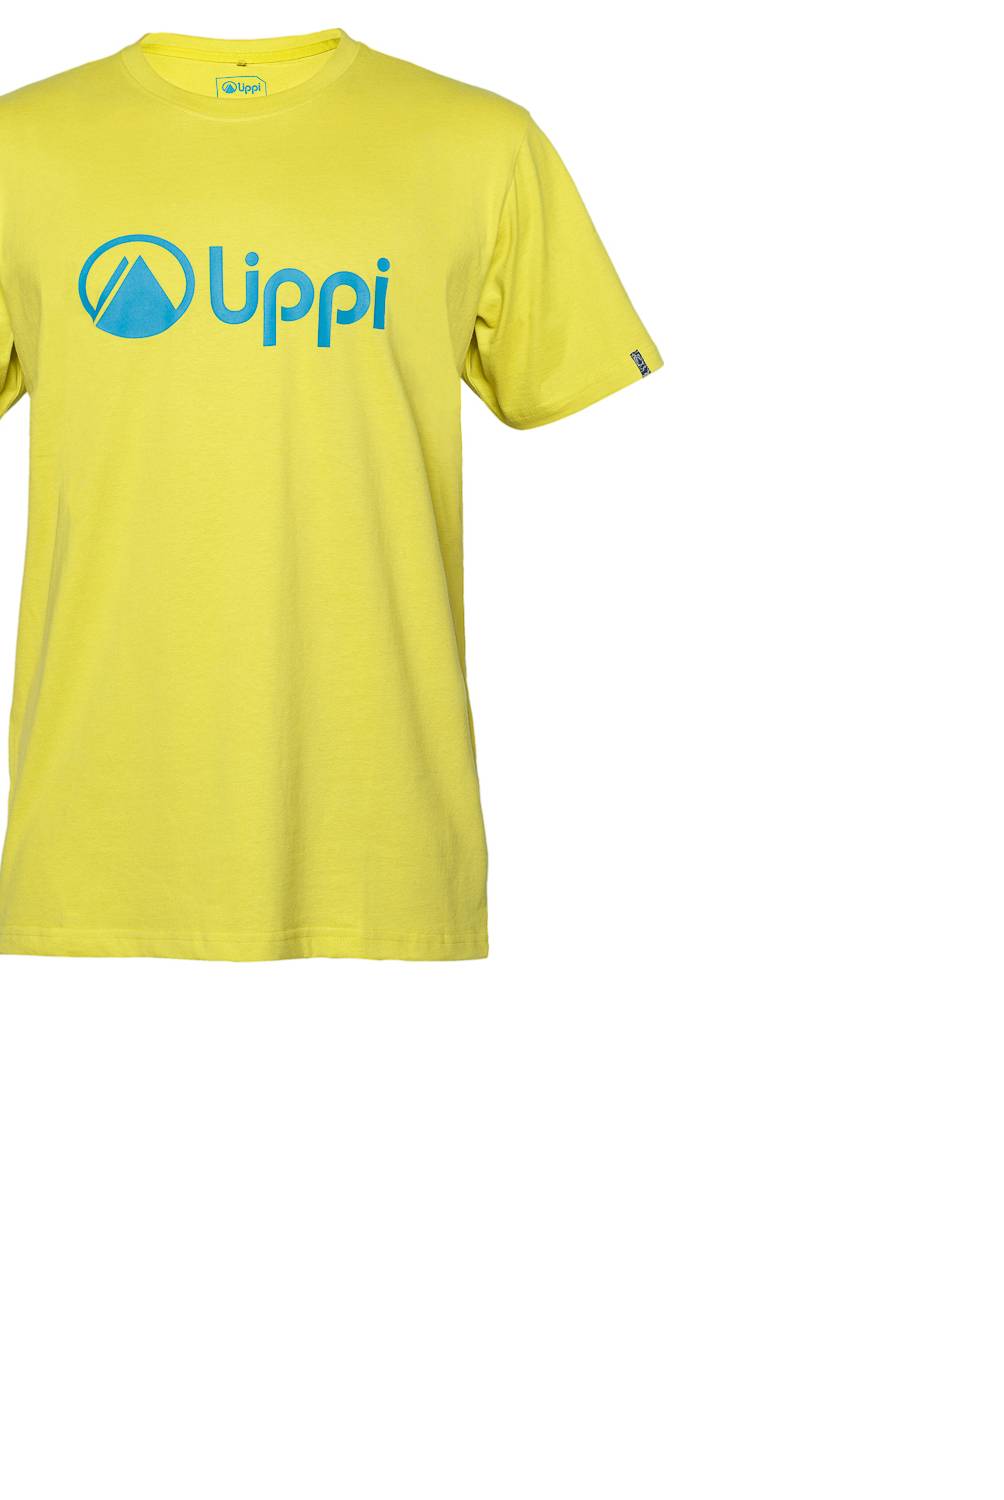 LIPPI - Polera Hombre Logo Cotton T-Shirt Verde V18